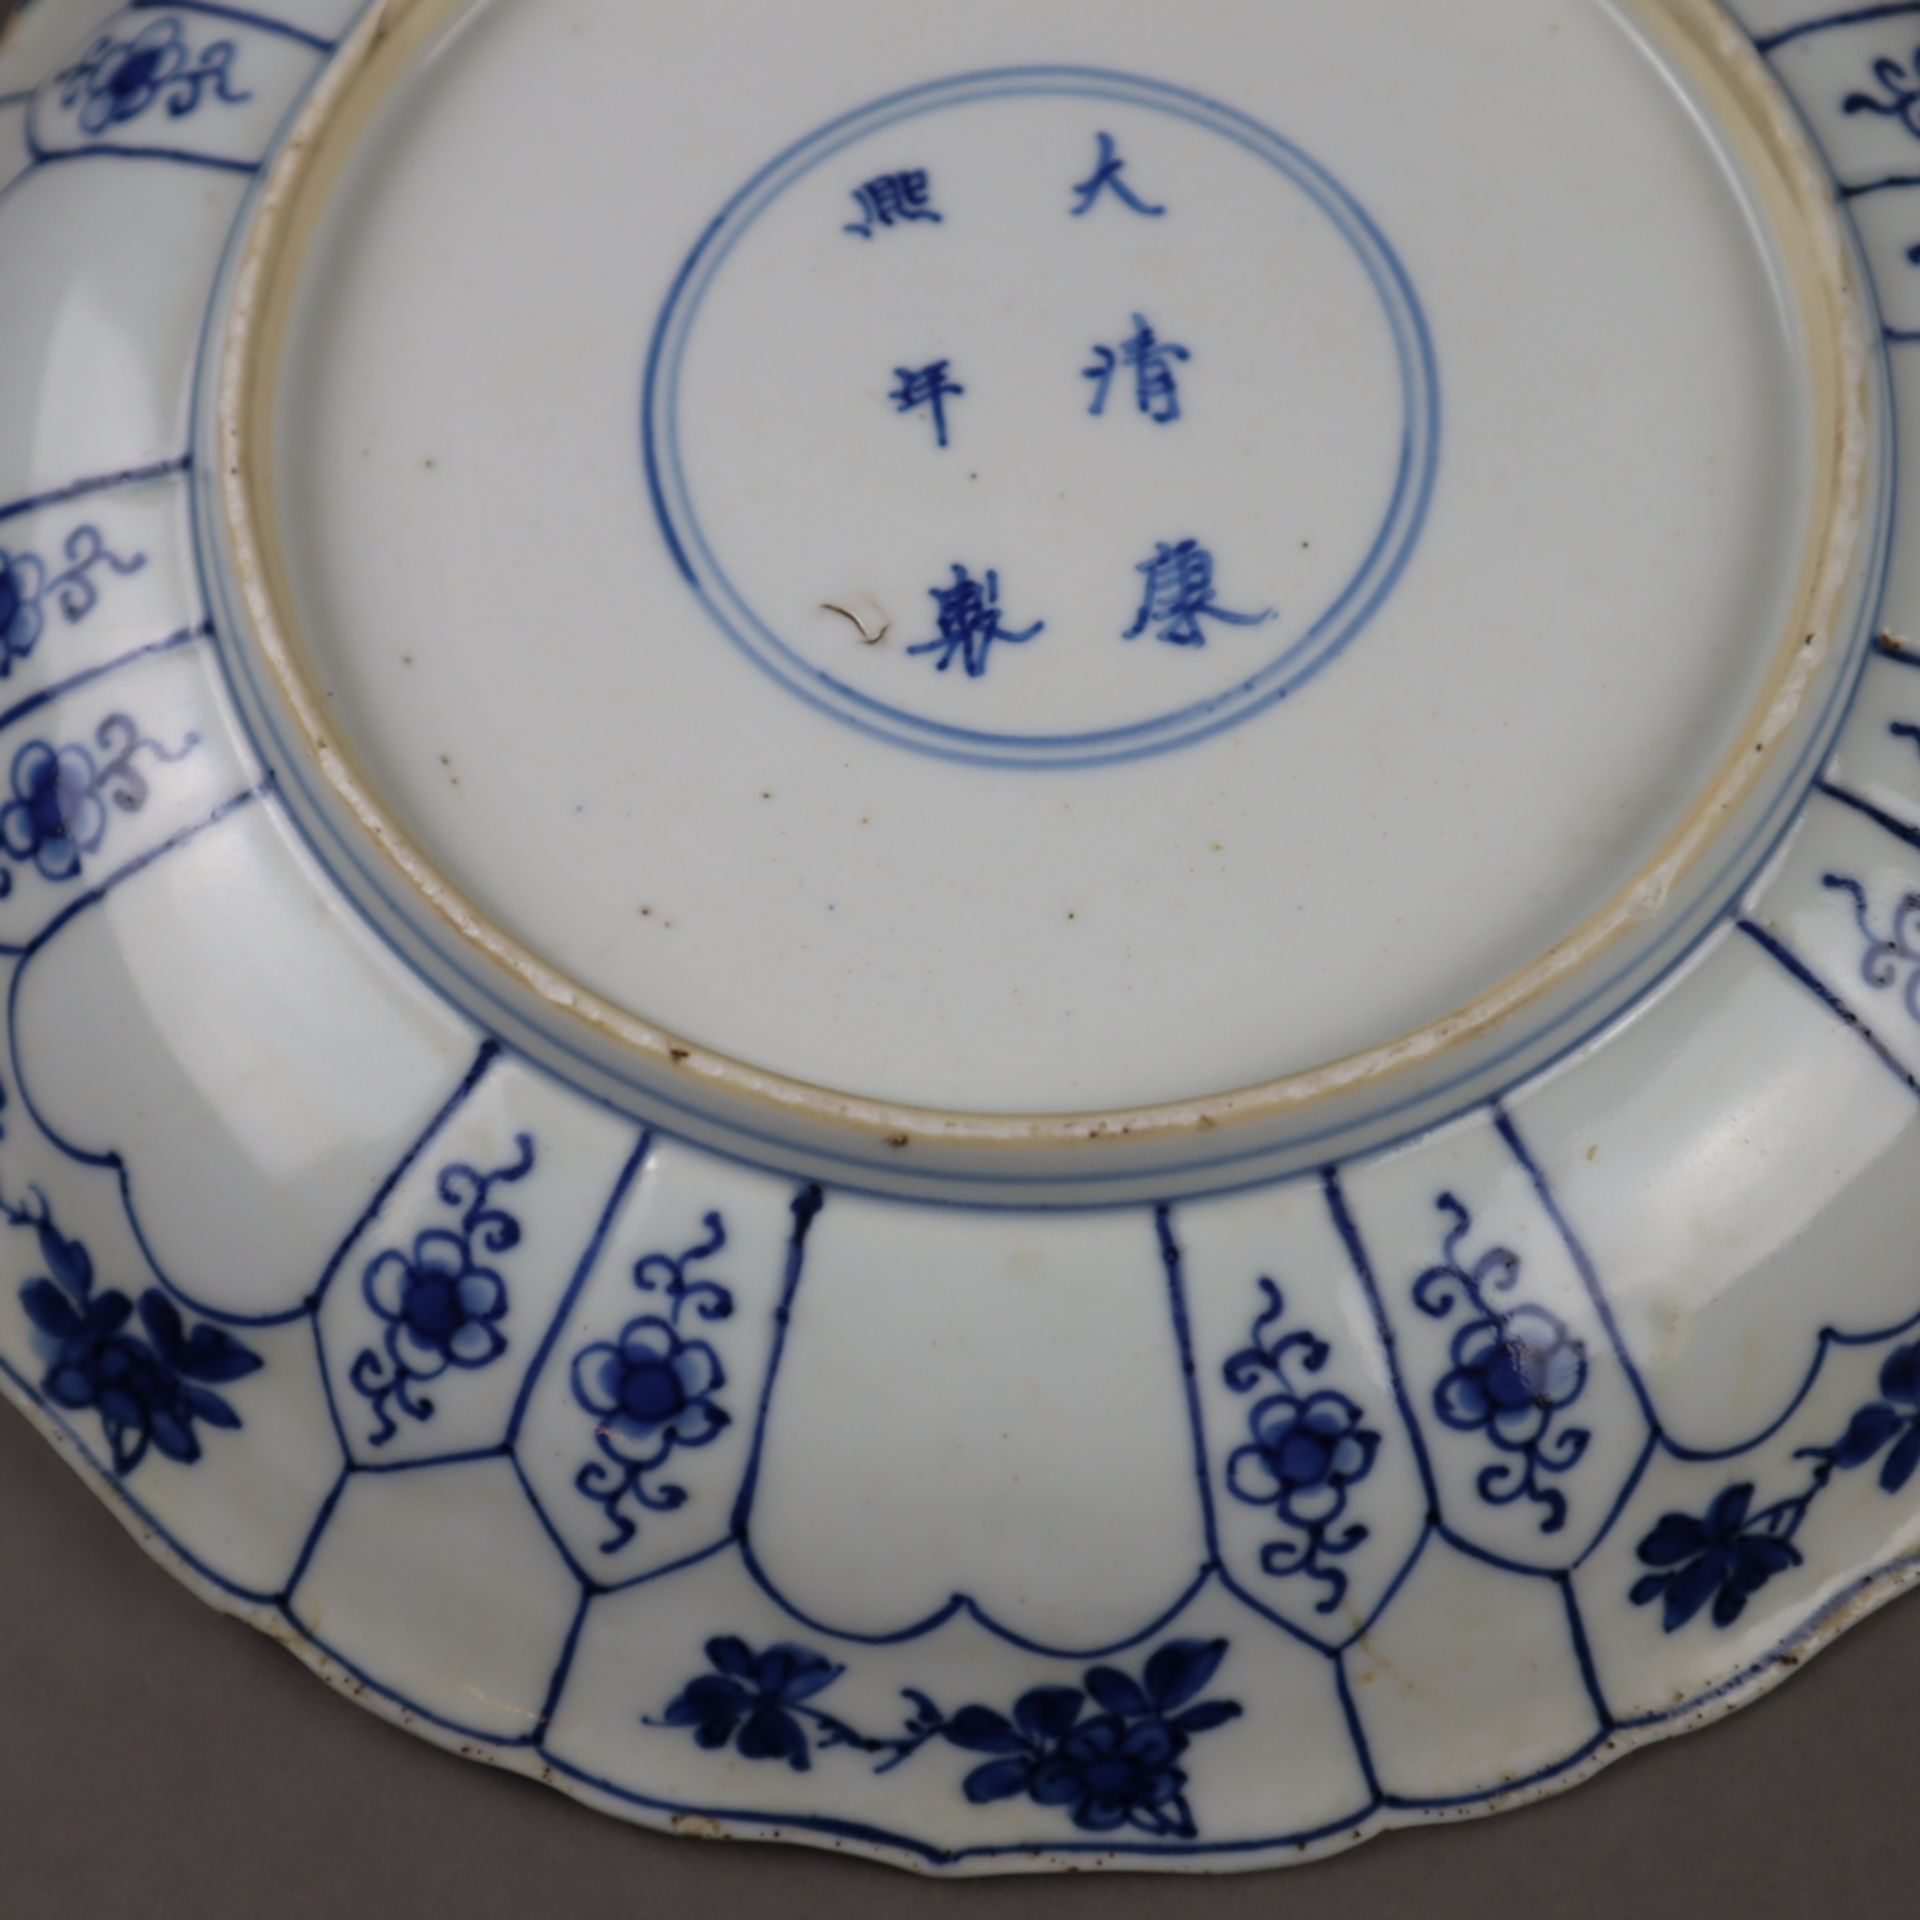 Blau-weißer Teller mit Silbermontur - China, späte Qing-Dynastie, Porzellan, dekoriert in Unterglas - Image 12 of 12